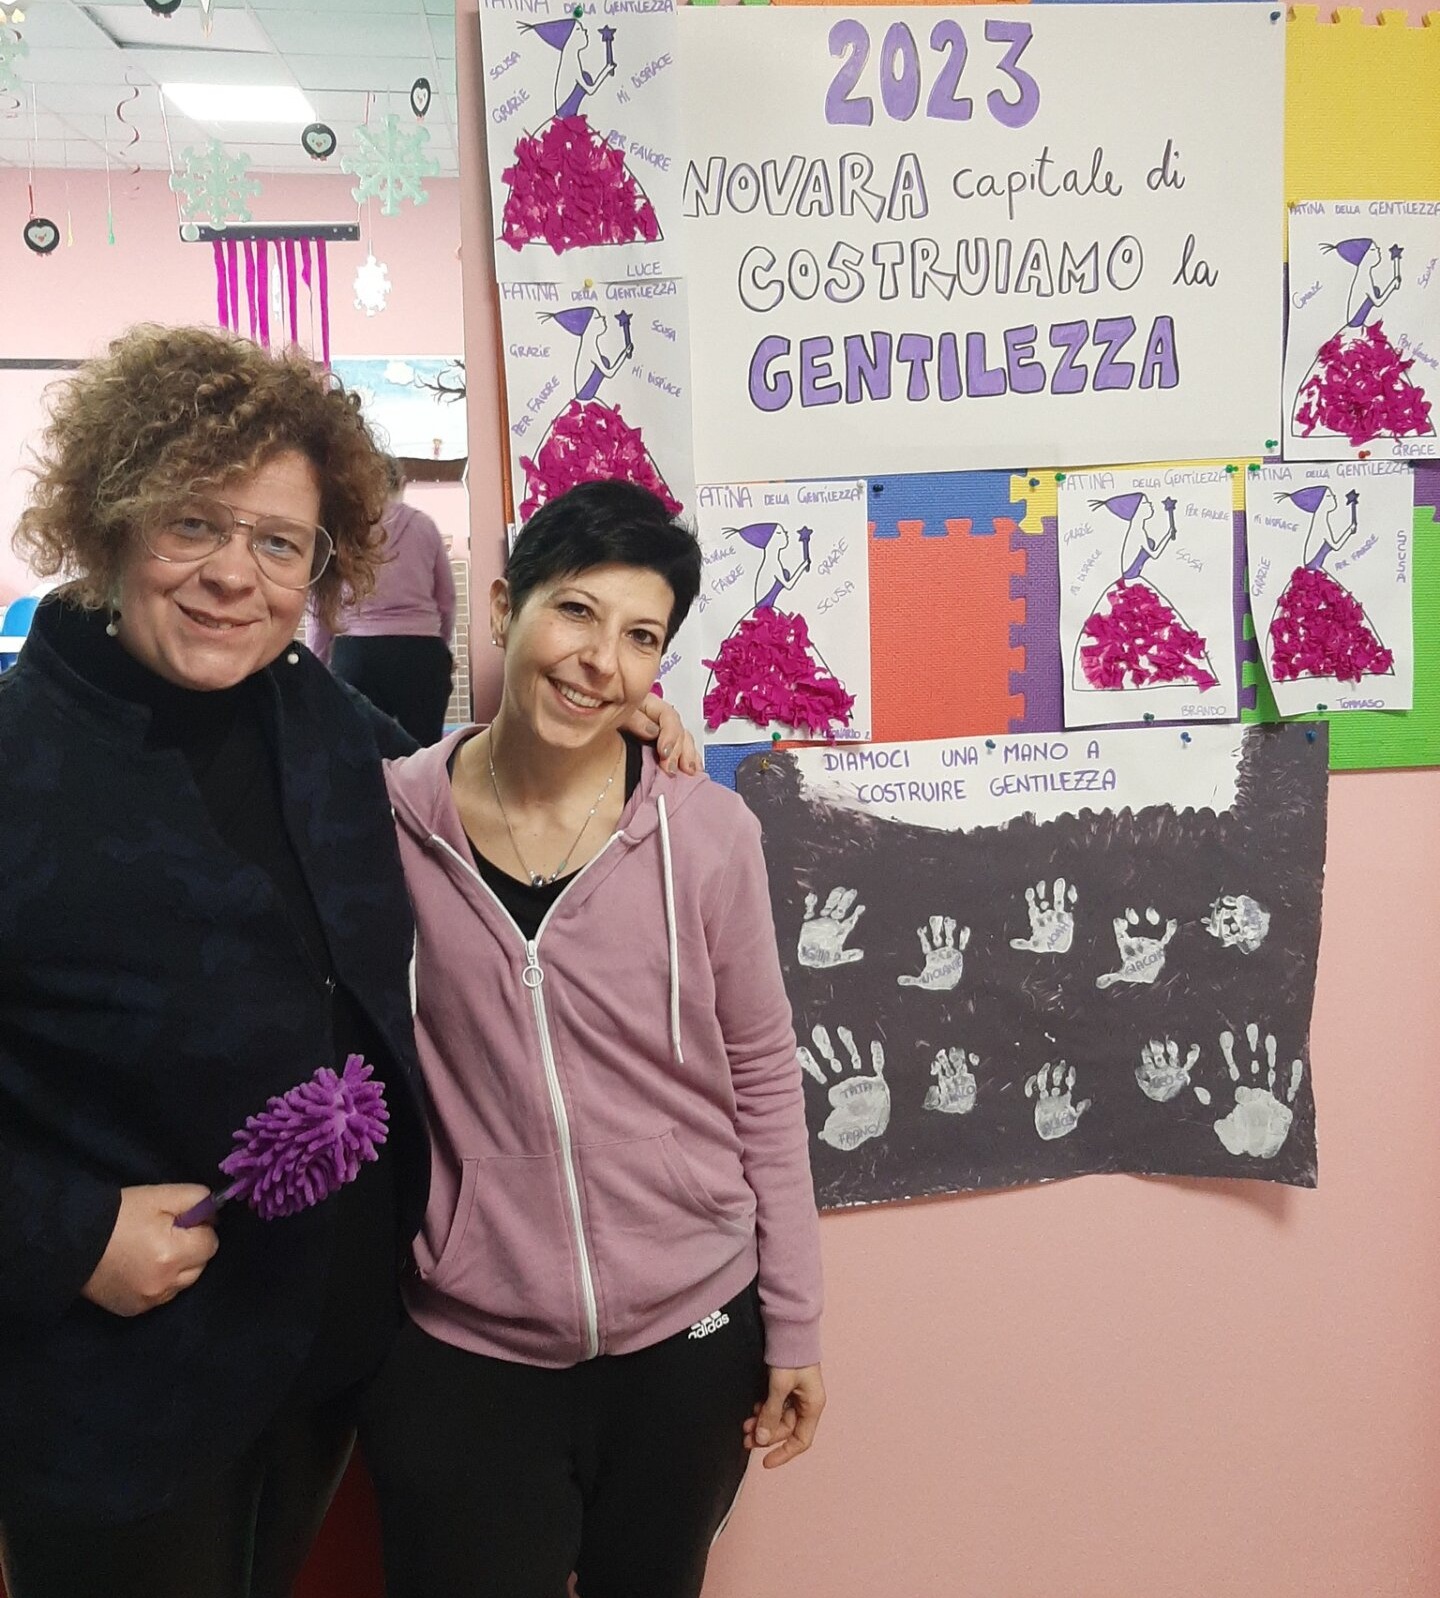 Giulia Negri inaugura un punto viola della gentillezza a Novara con la responsabile del punto viola Elisa